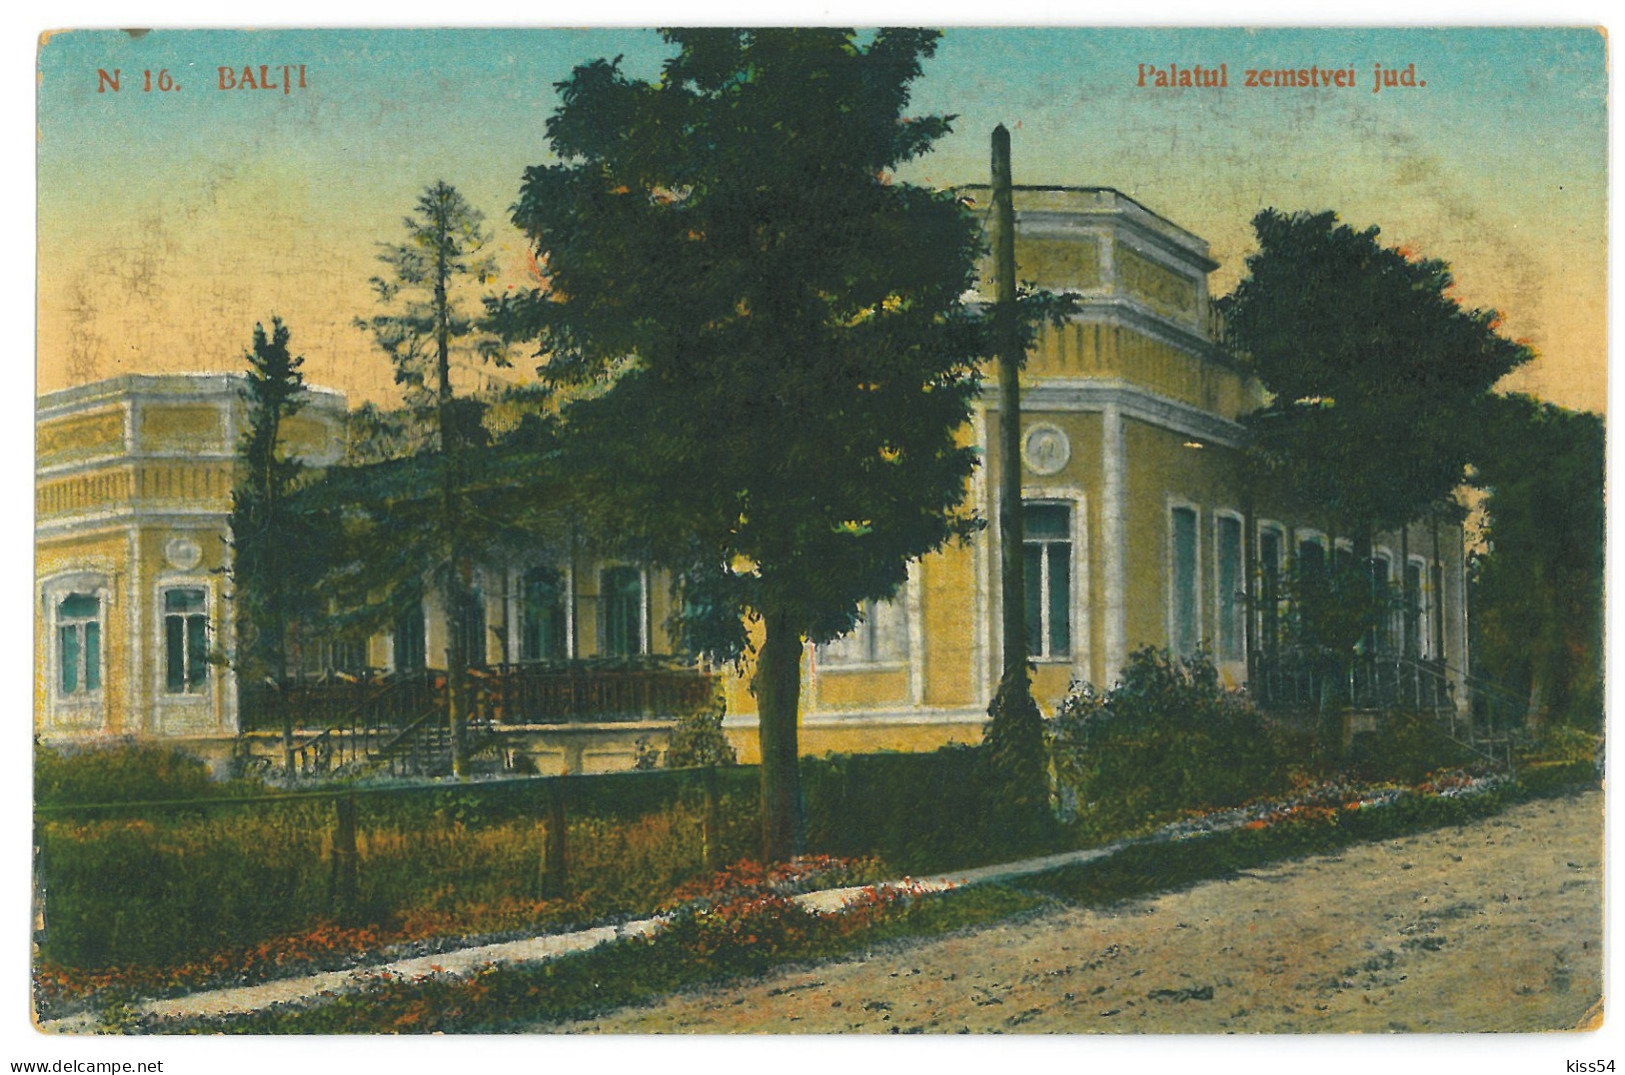 MOL 3 - 23622 BALTI, Palace, Moldova - Old Postcard - Unused - Moldavia